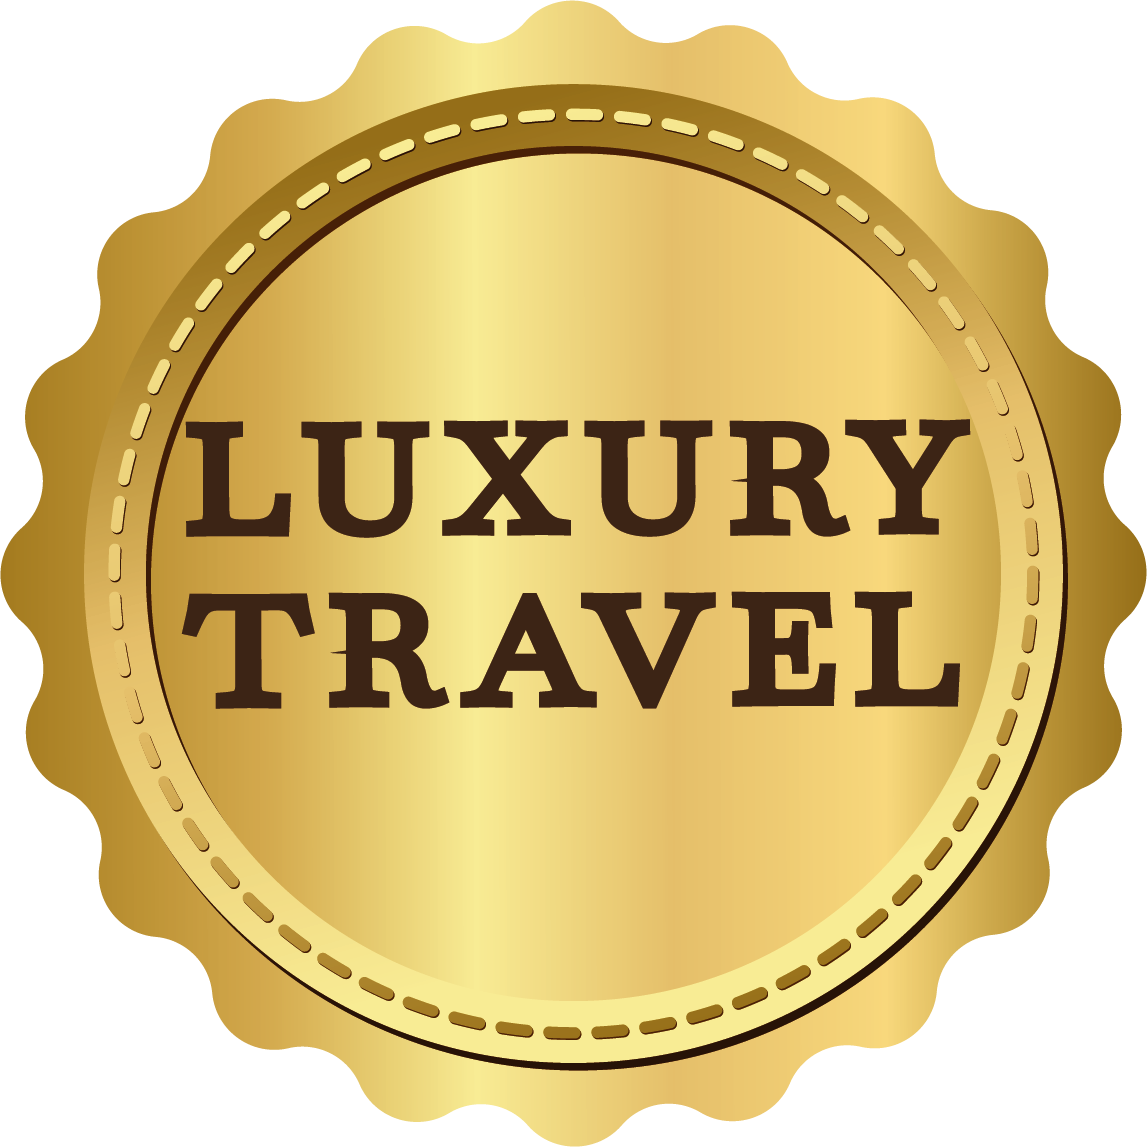 Luxury Travel